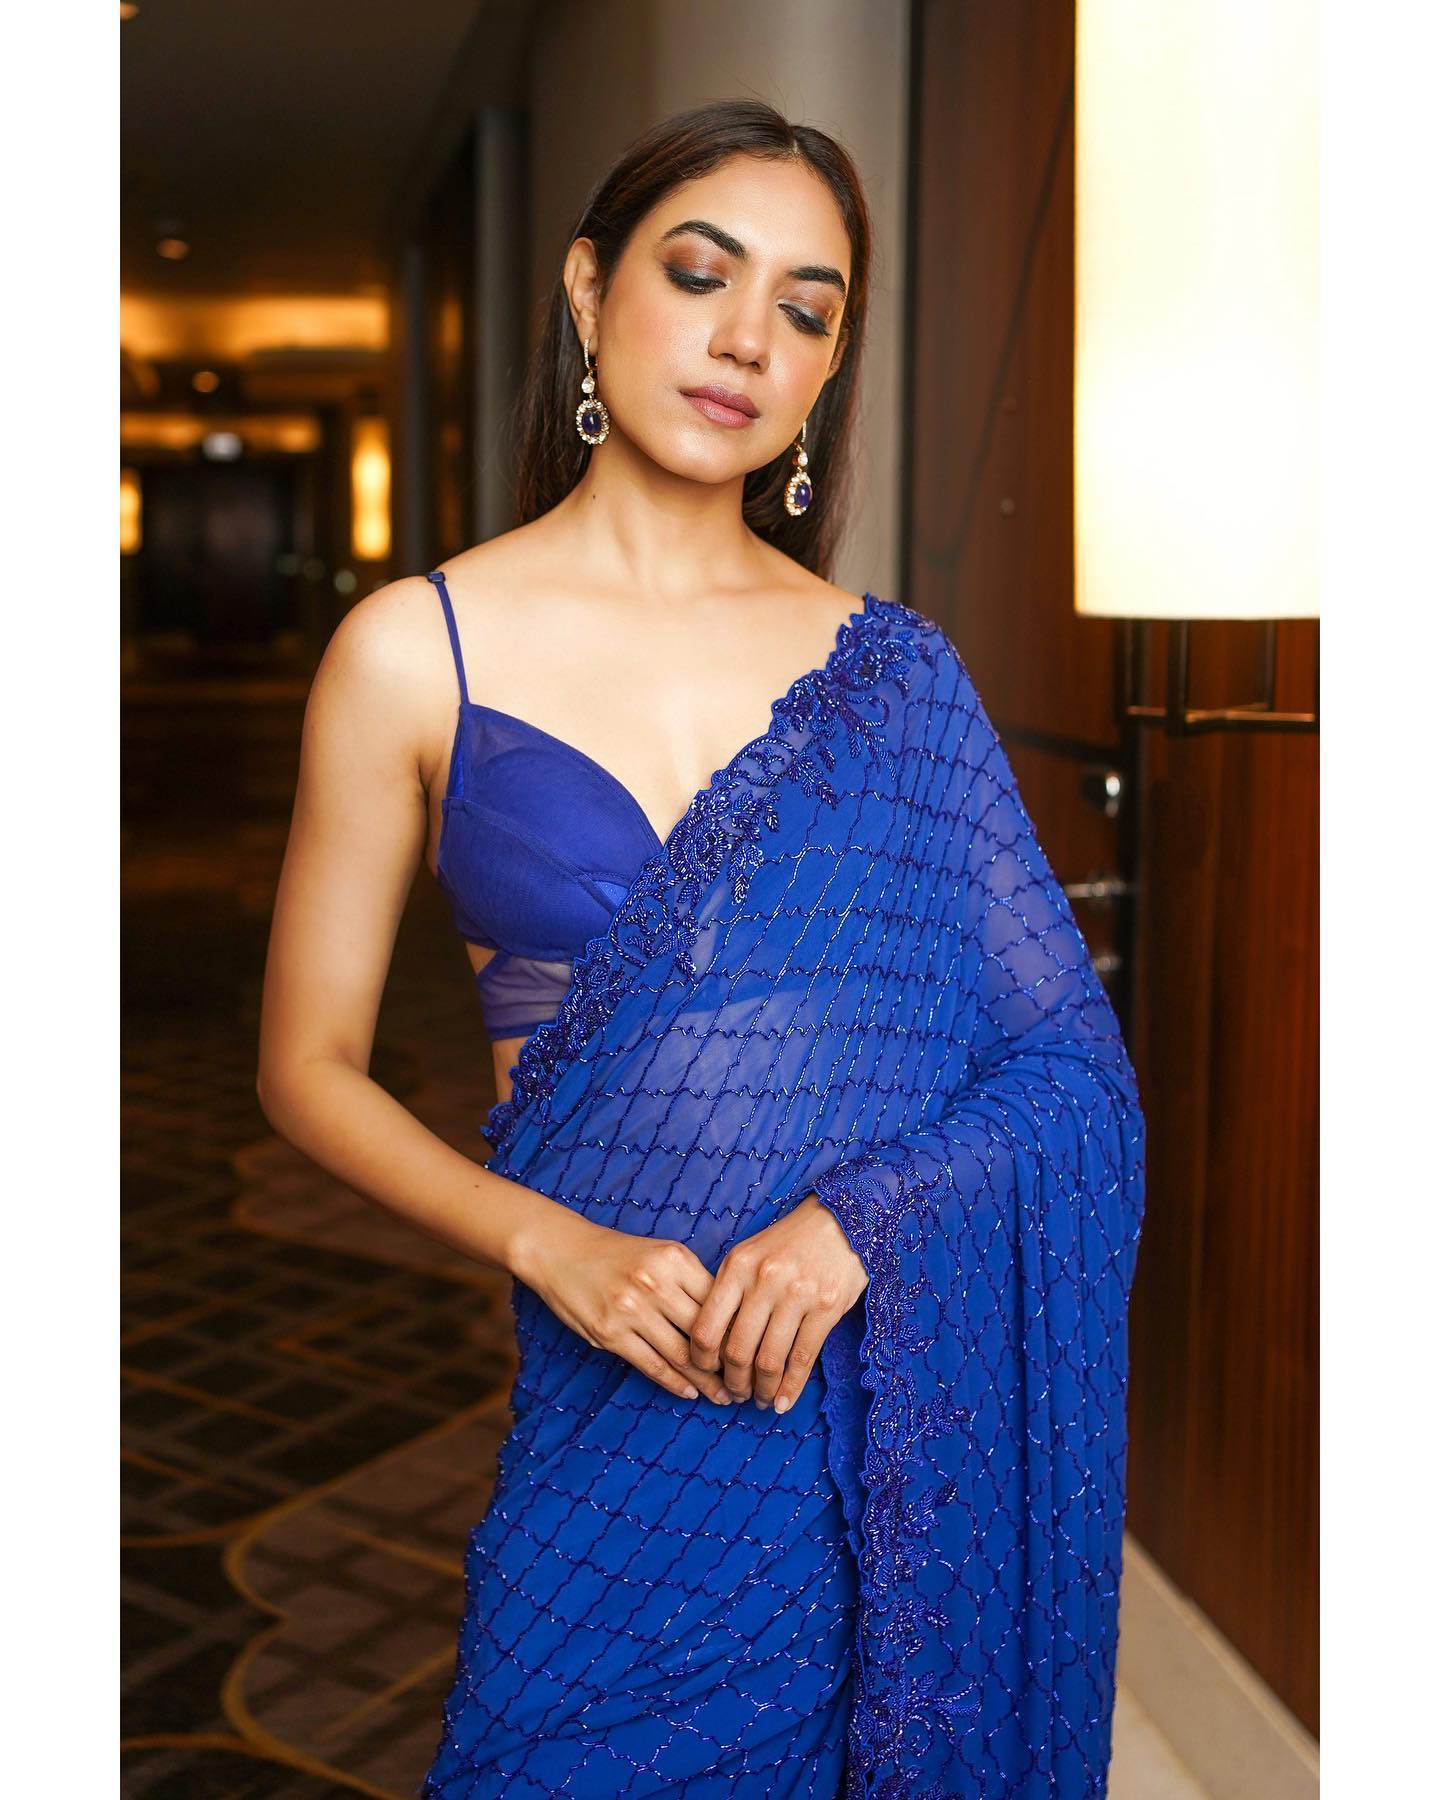 Actress Ritu Varma Hot And Sexy In Blue Backless Saree Photos 4